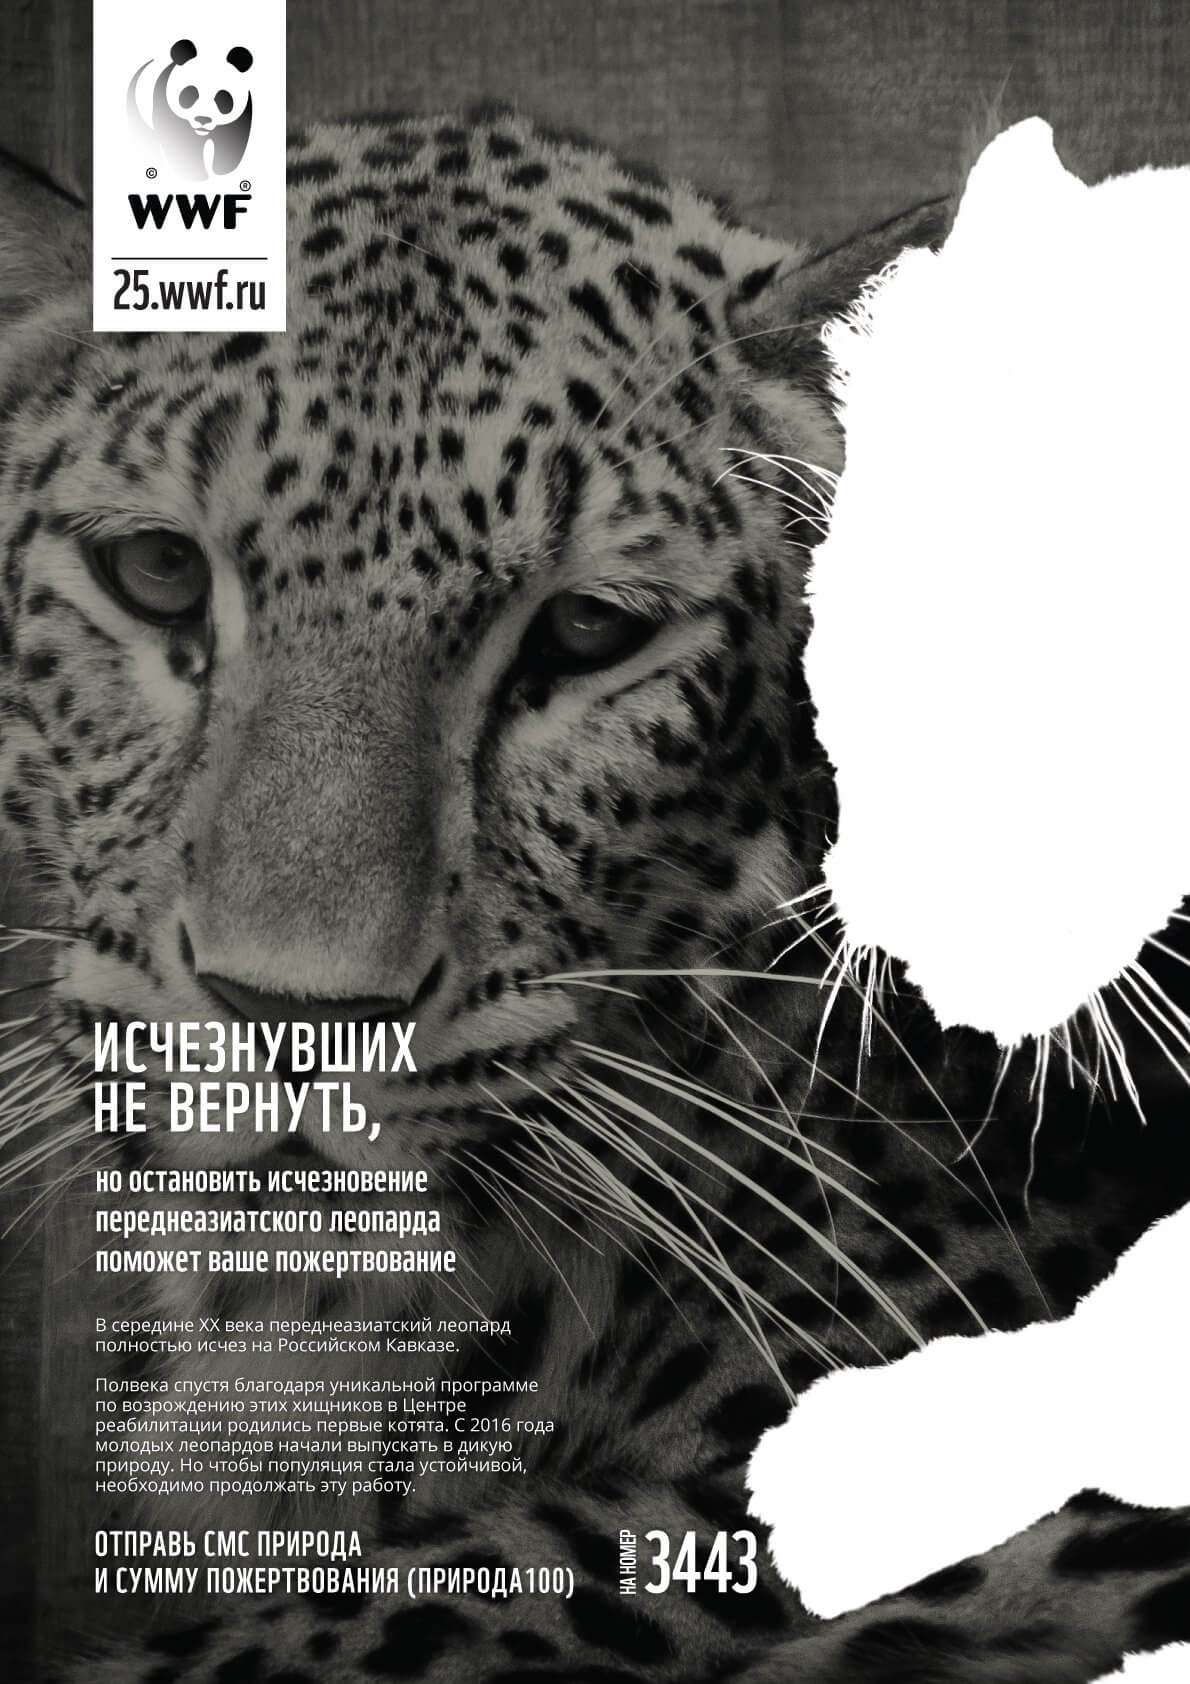 соцреклама WWF России